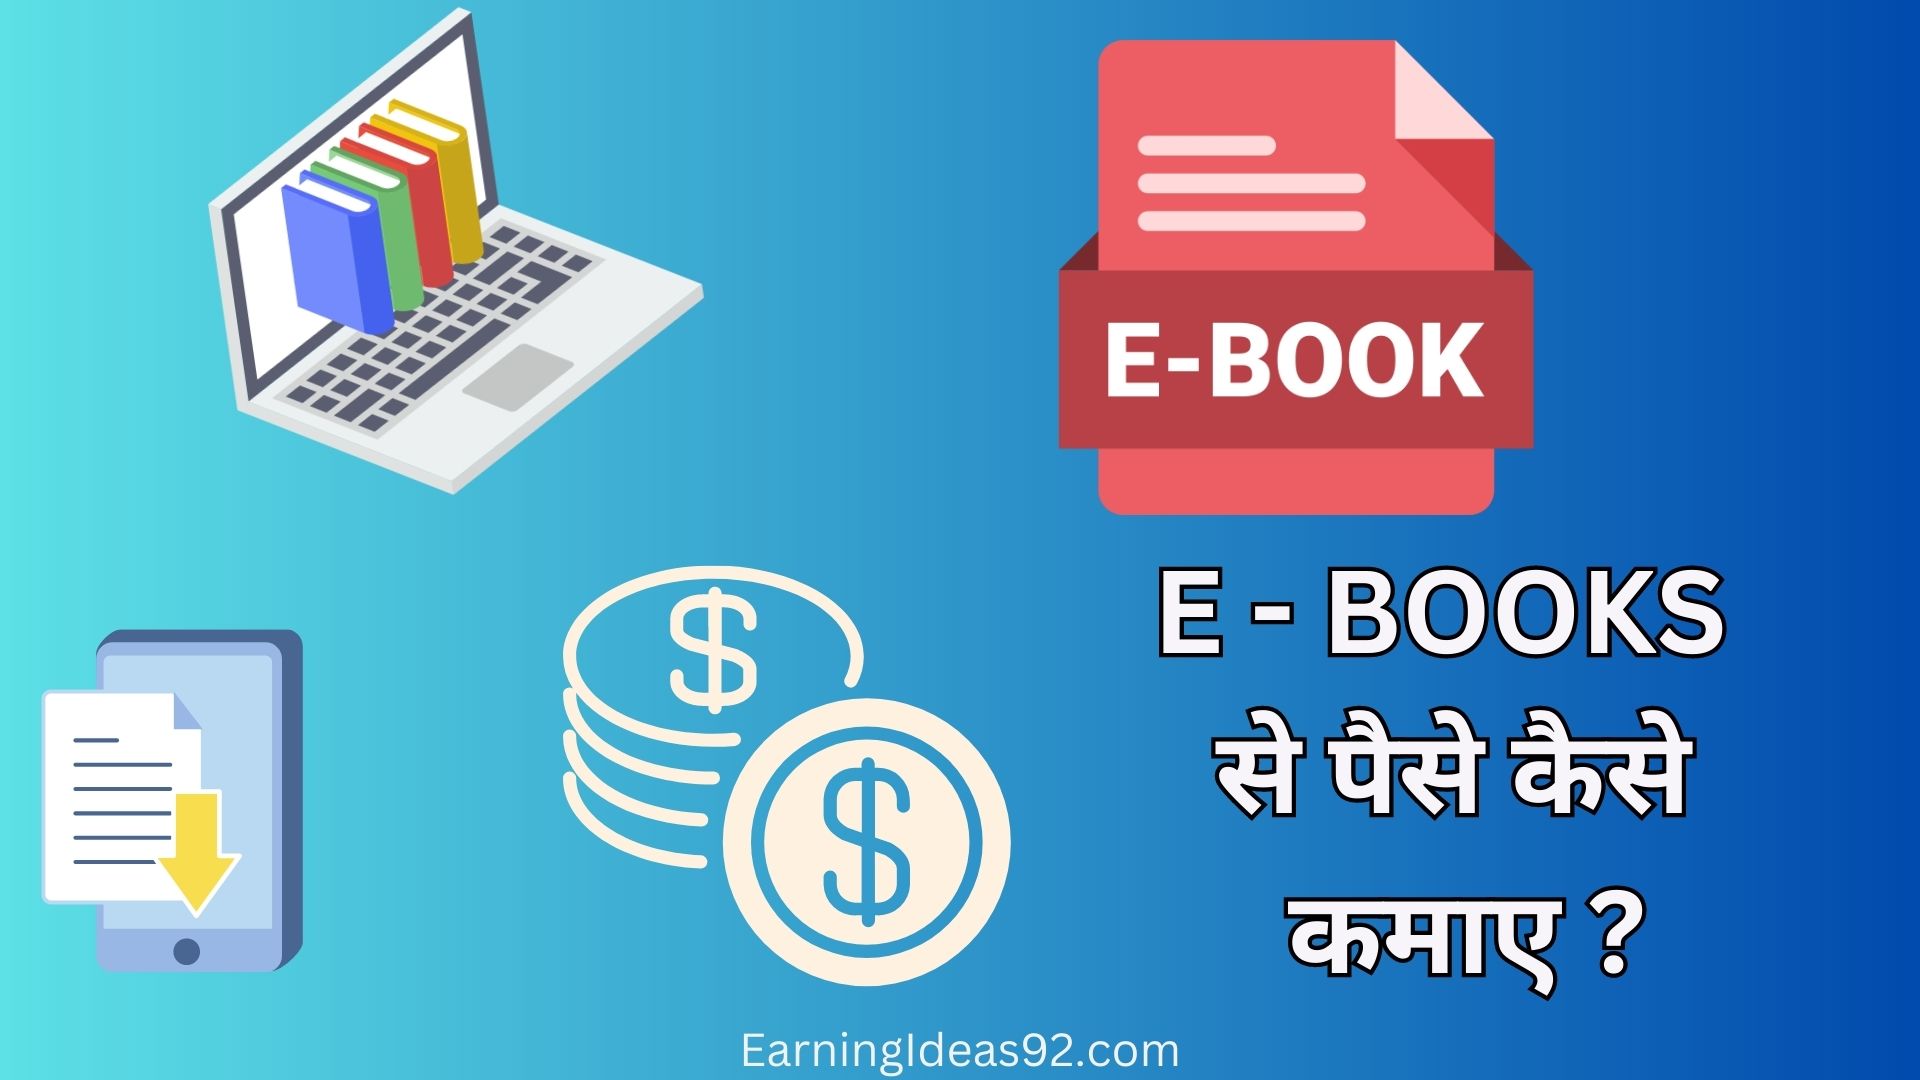 EBooks से पैसे कैसे कमाए? - Best तरीके हिंदी में